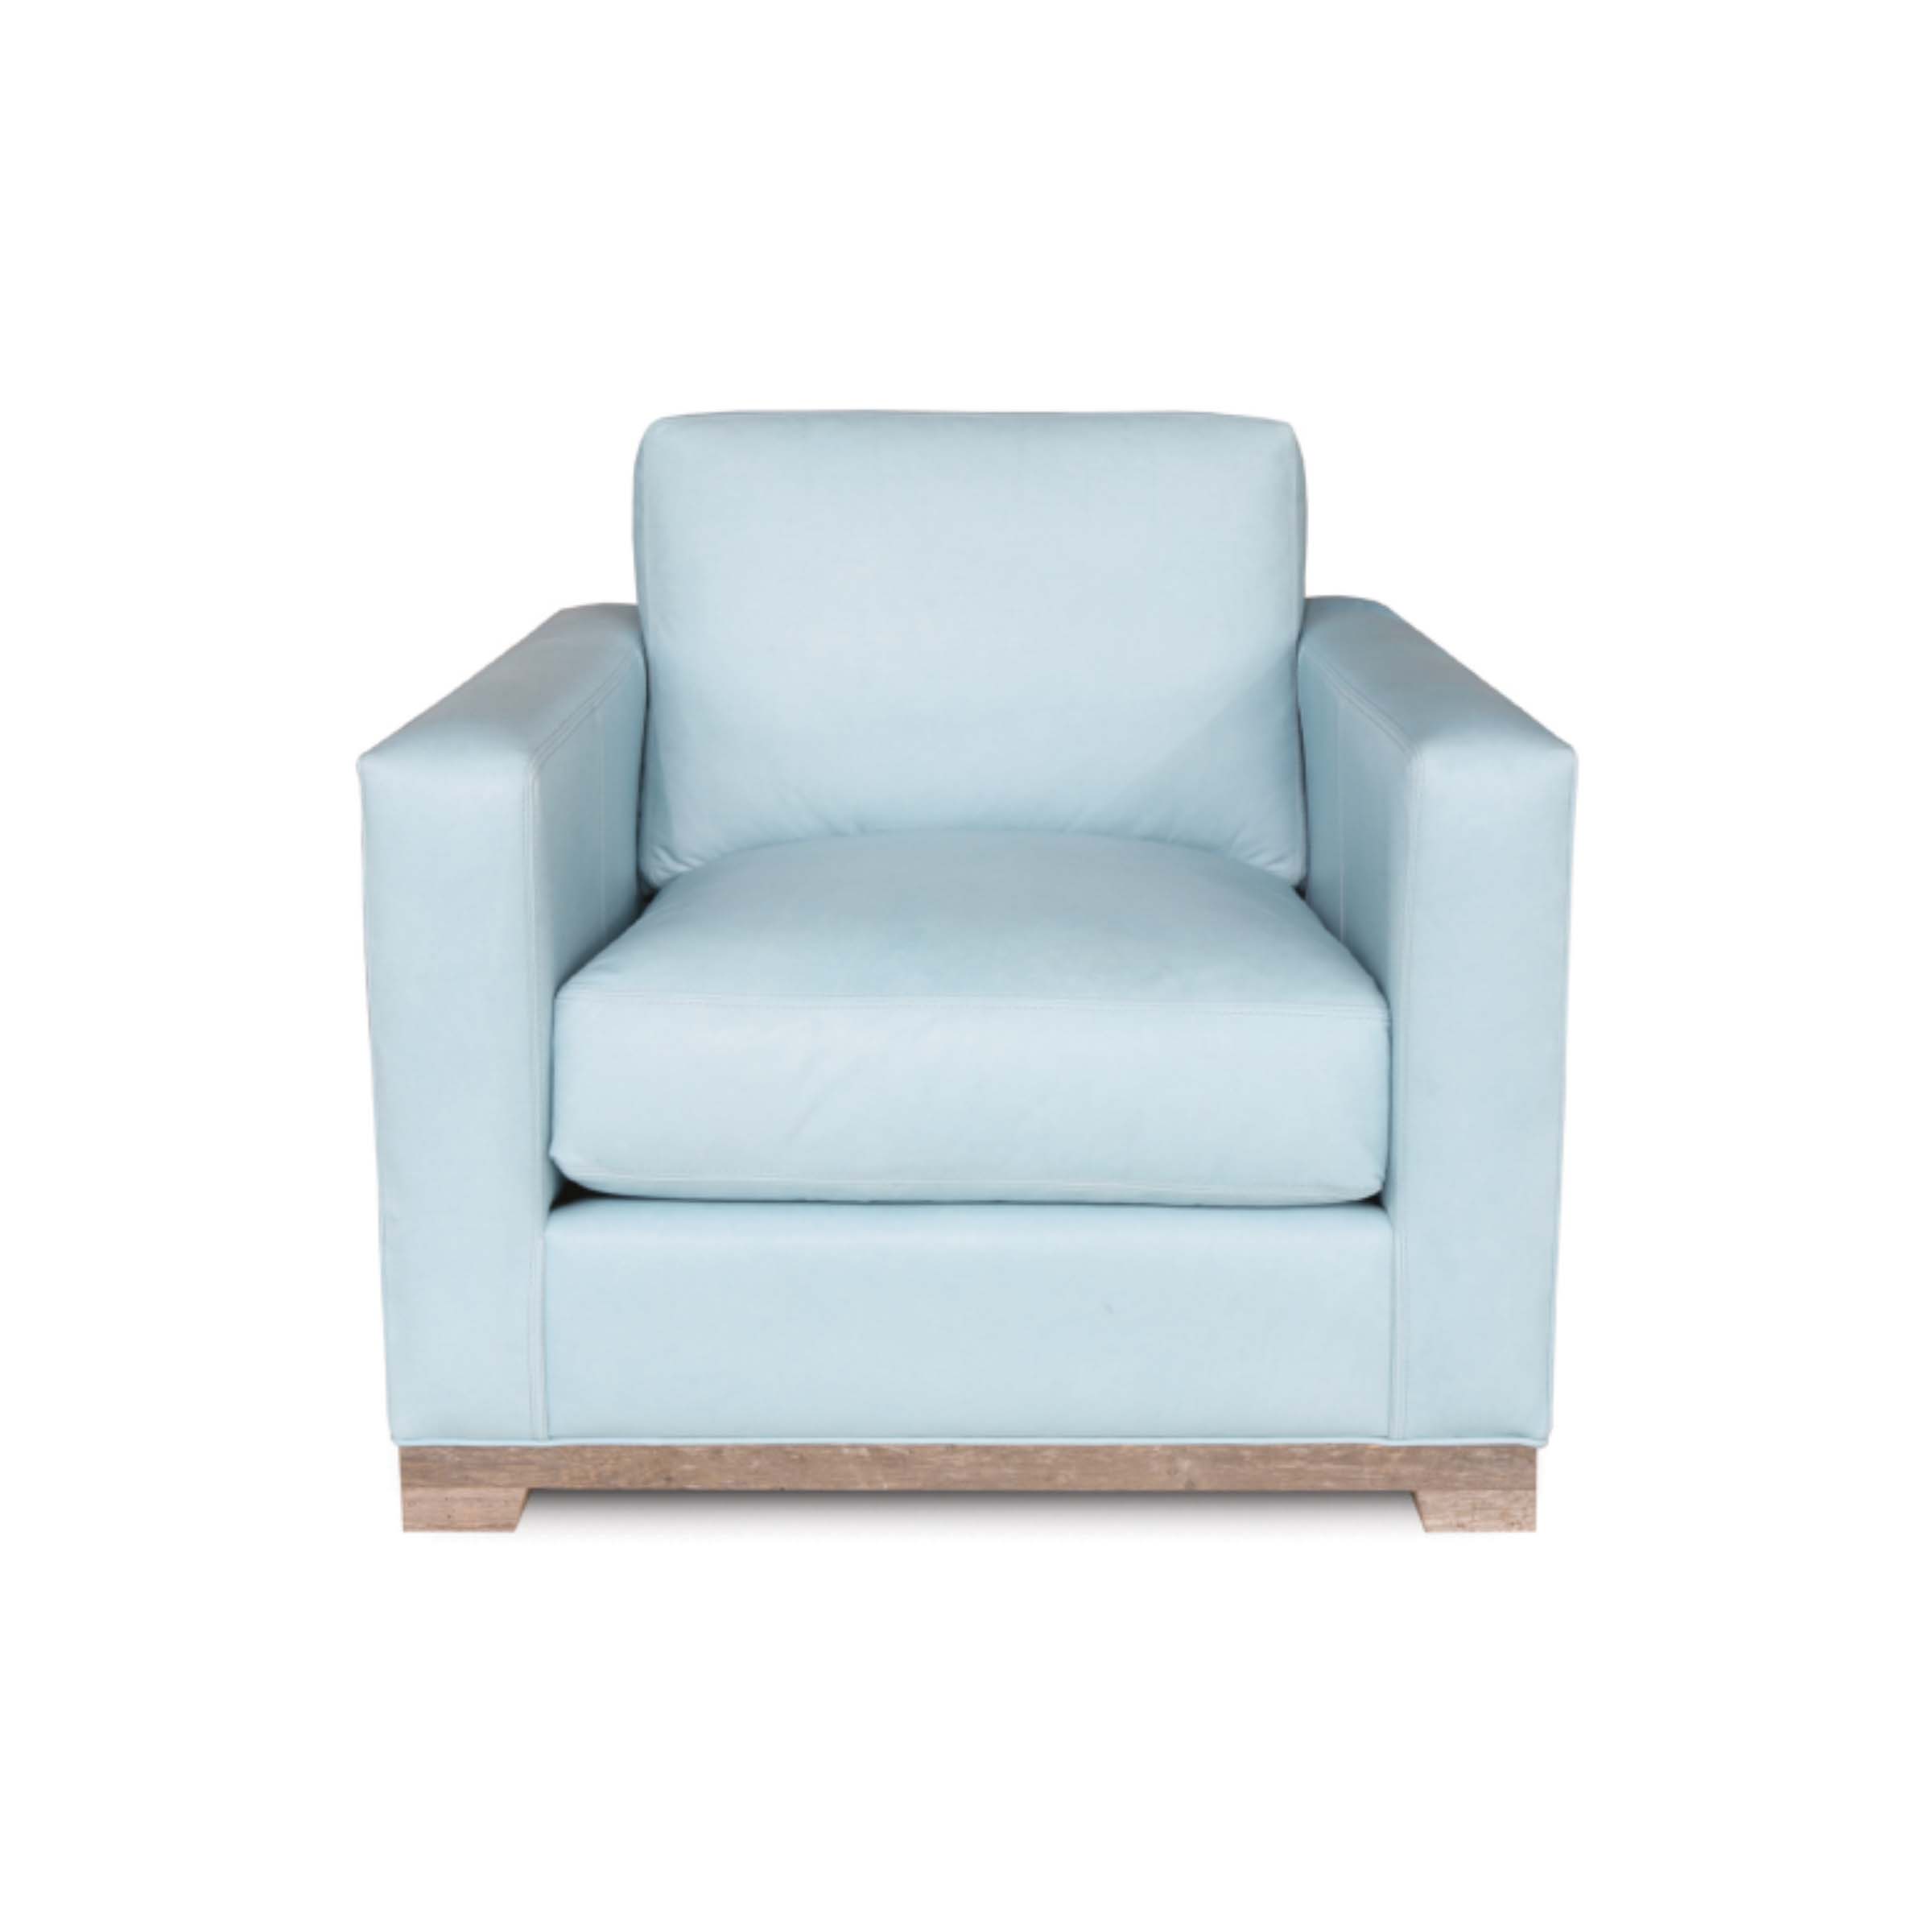 NEWPORT - 10 Chair Dreamer Powder Blue